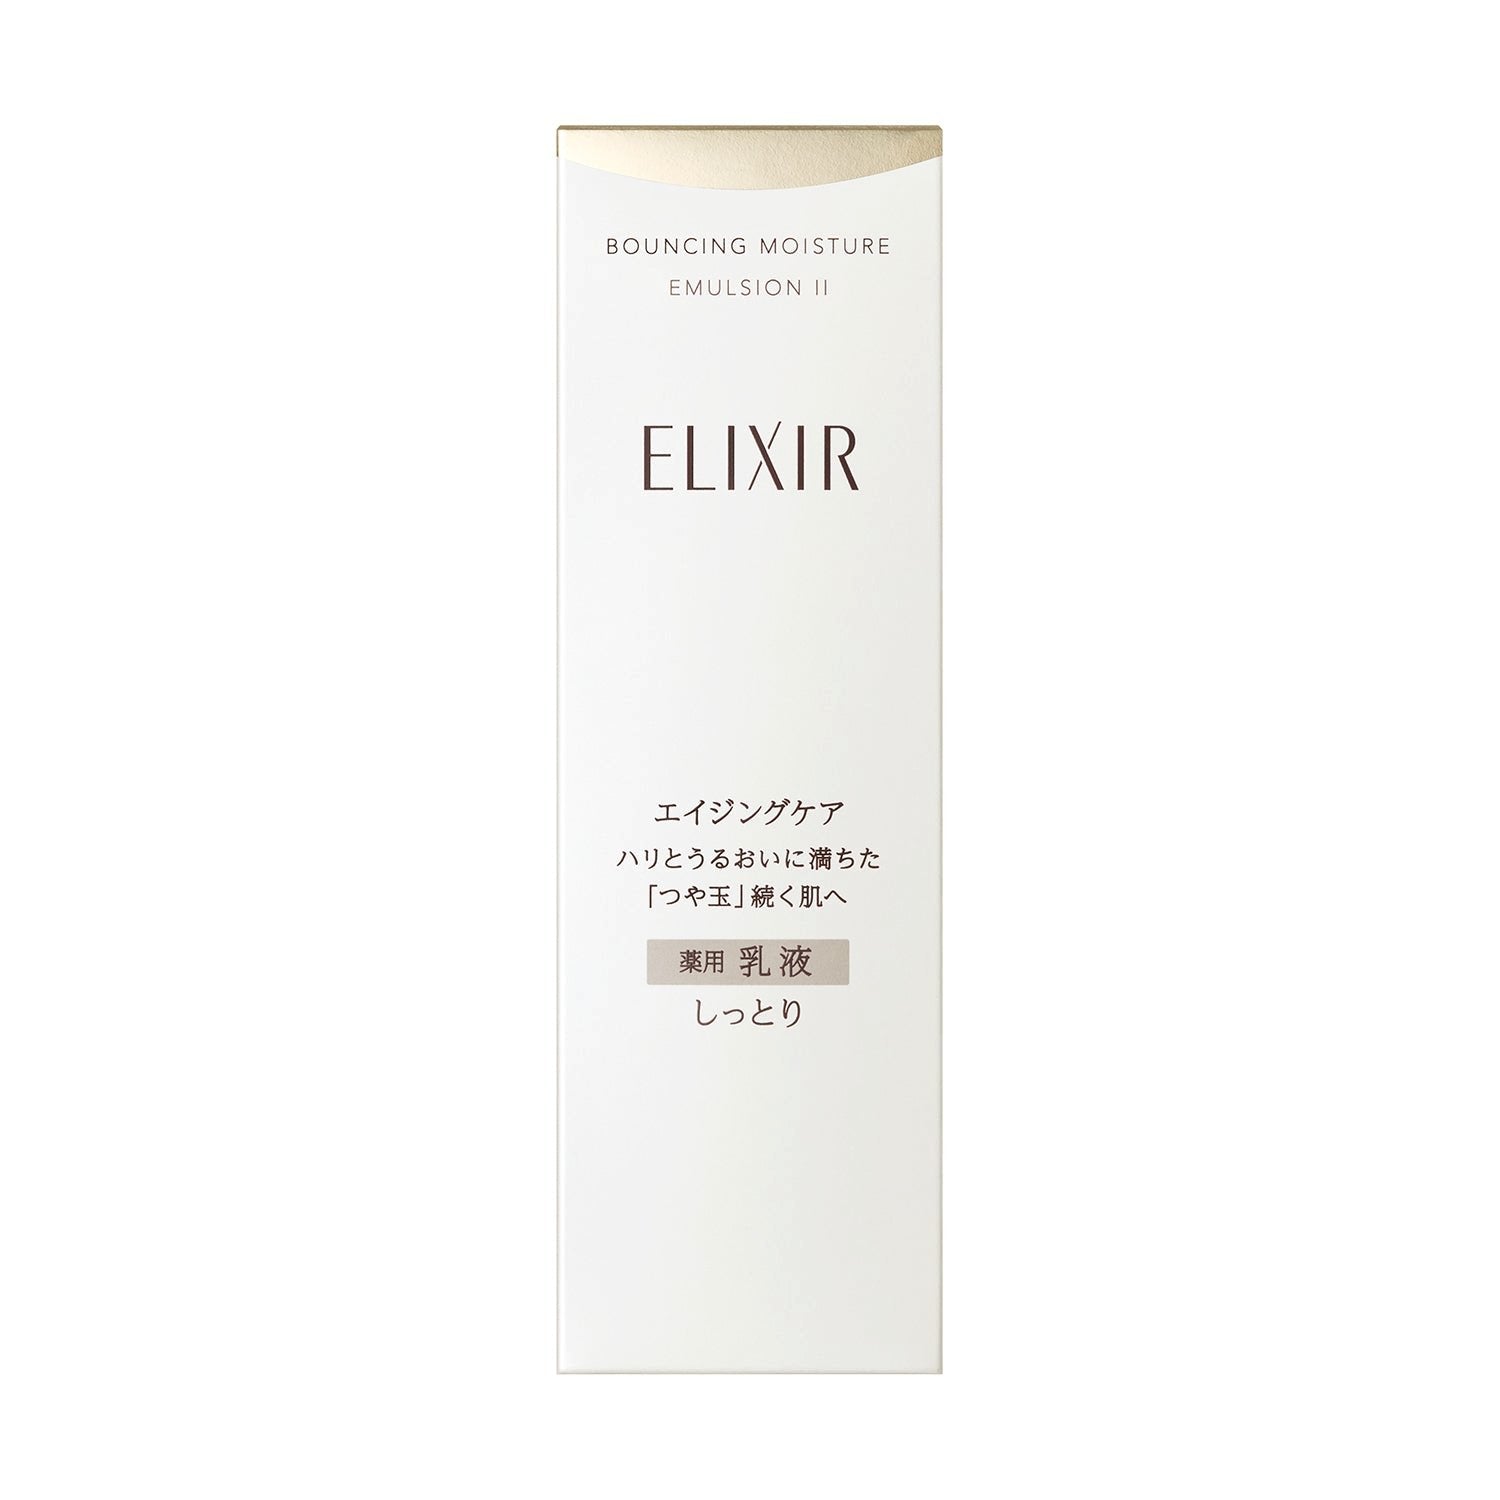 Shiseido Elixir Bouncing Moisture Emulsion Anti Aging Face Milk 130ml